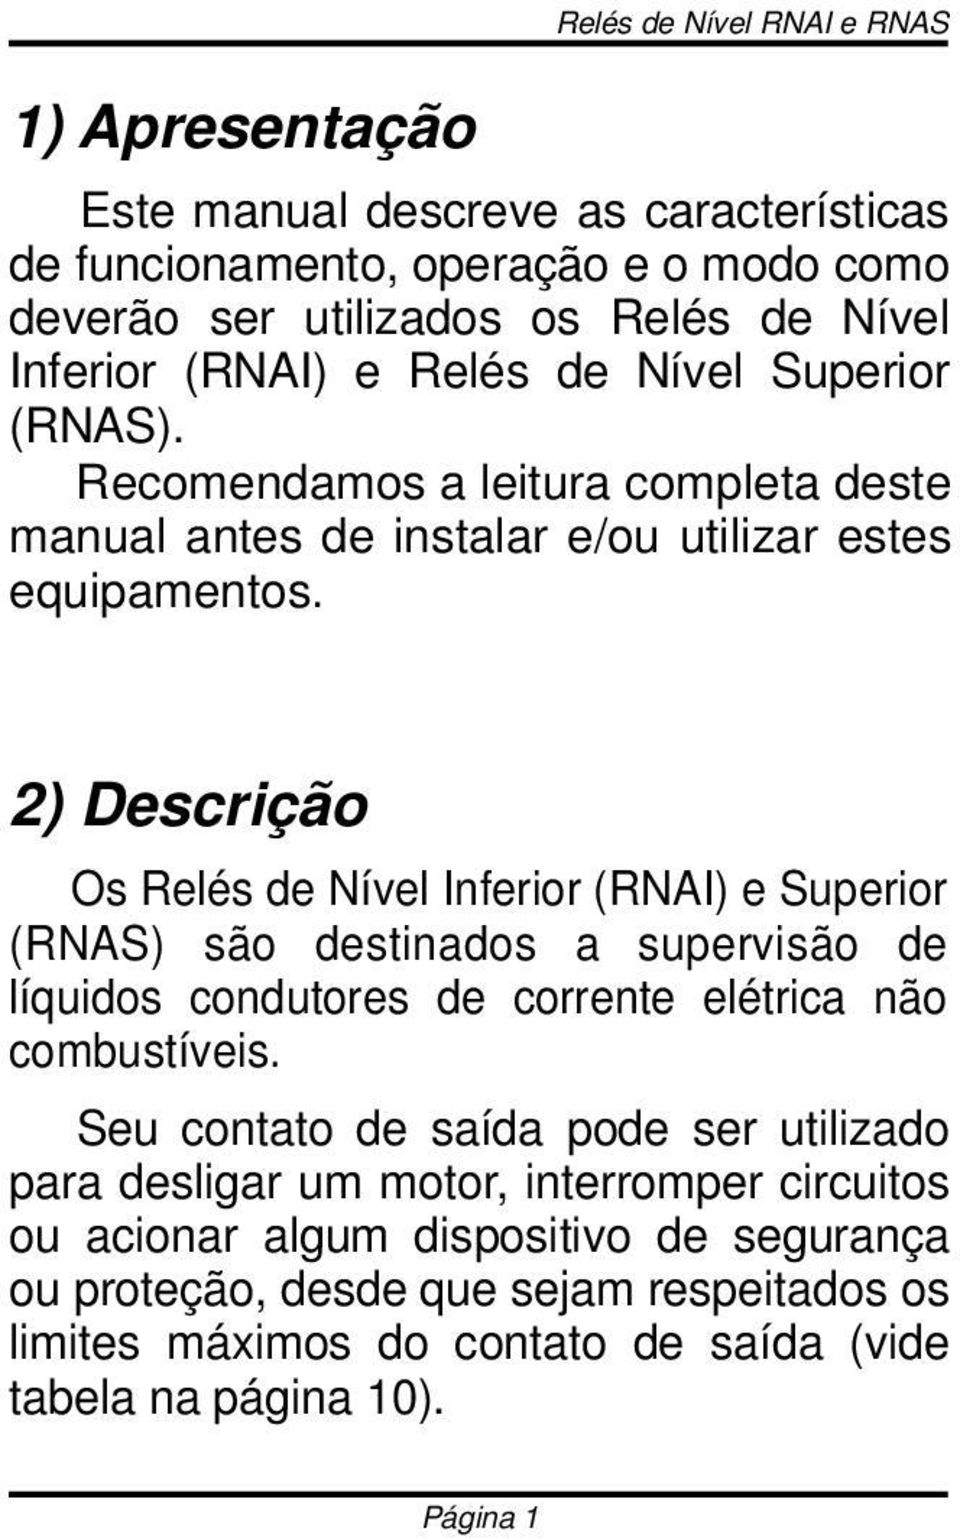 2) Descrição Os Relés de Nível Inferior (RNAI) e Superior (RNAS) são destinados a supervisão de líquidos condutores de corrente elétrica não combustíveis.